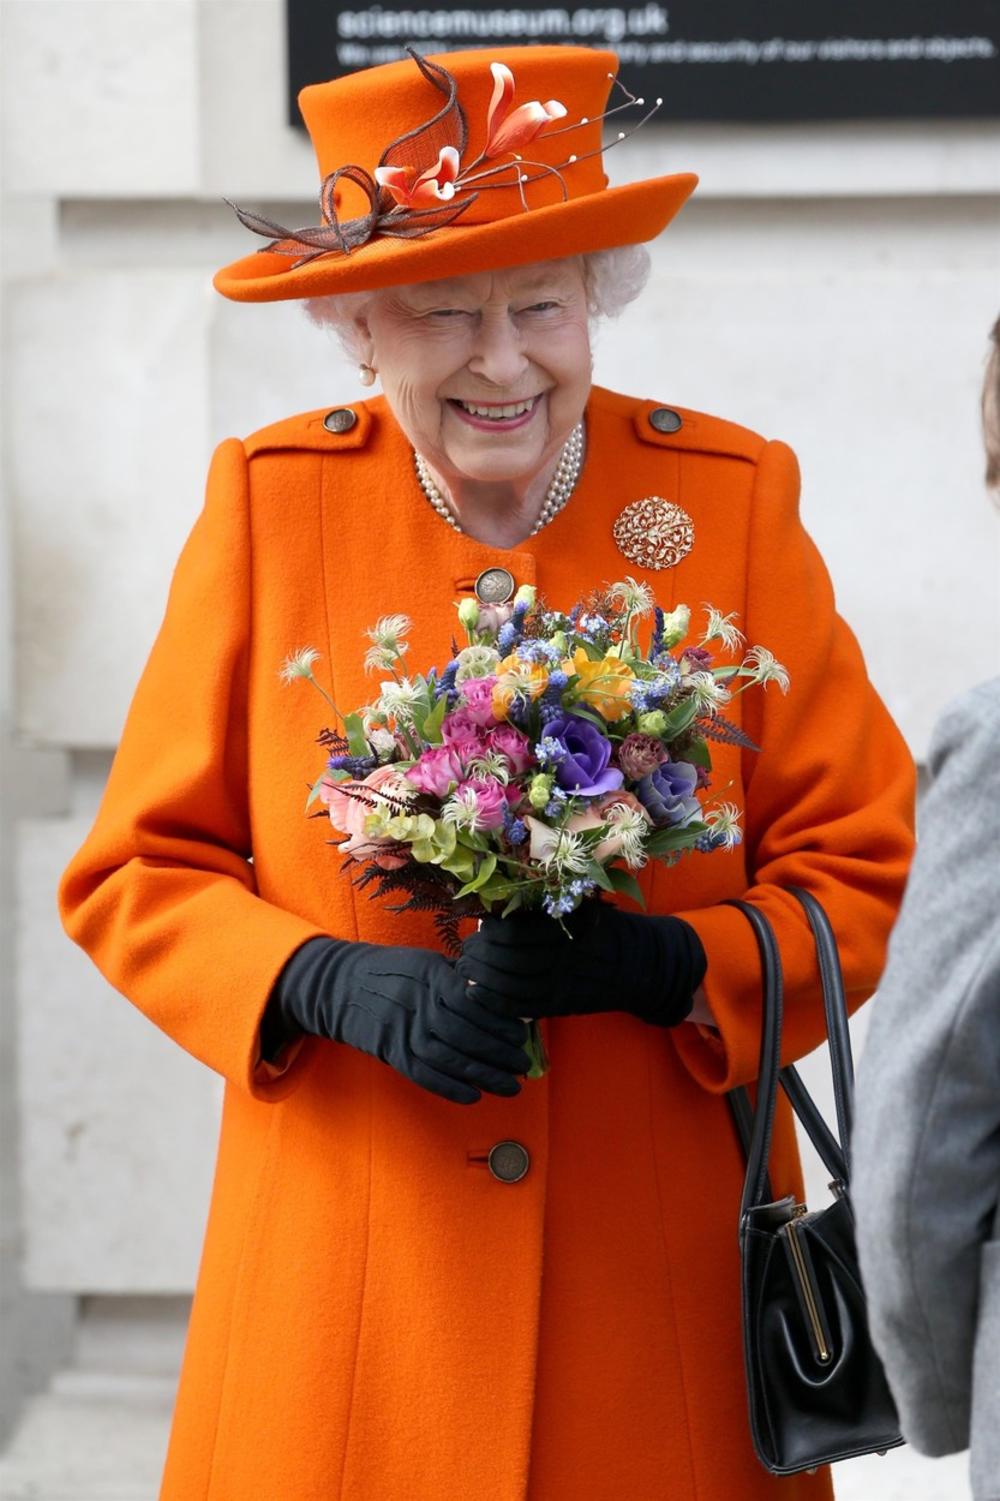 <p>Britanska kraljica Elizabeta II, koja će ove godine proslaviti 96. rođendan, pozitivna je na virus korona, saopštila je Bakingemska palata</p>